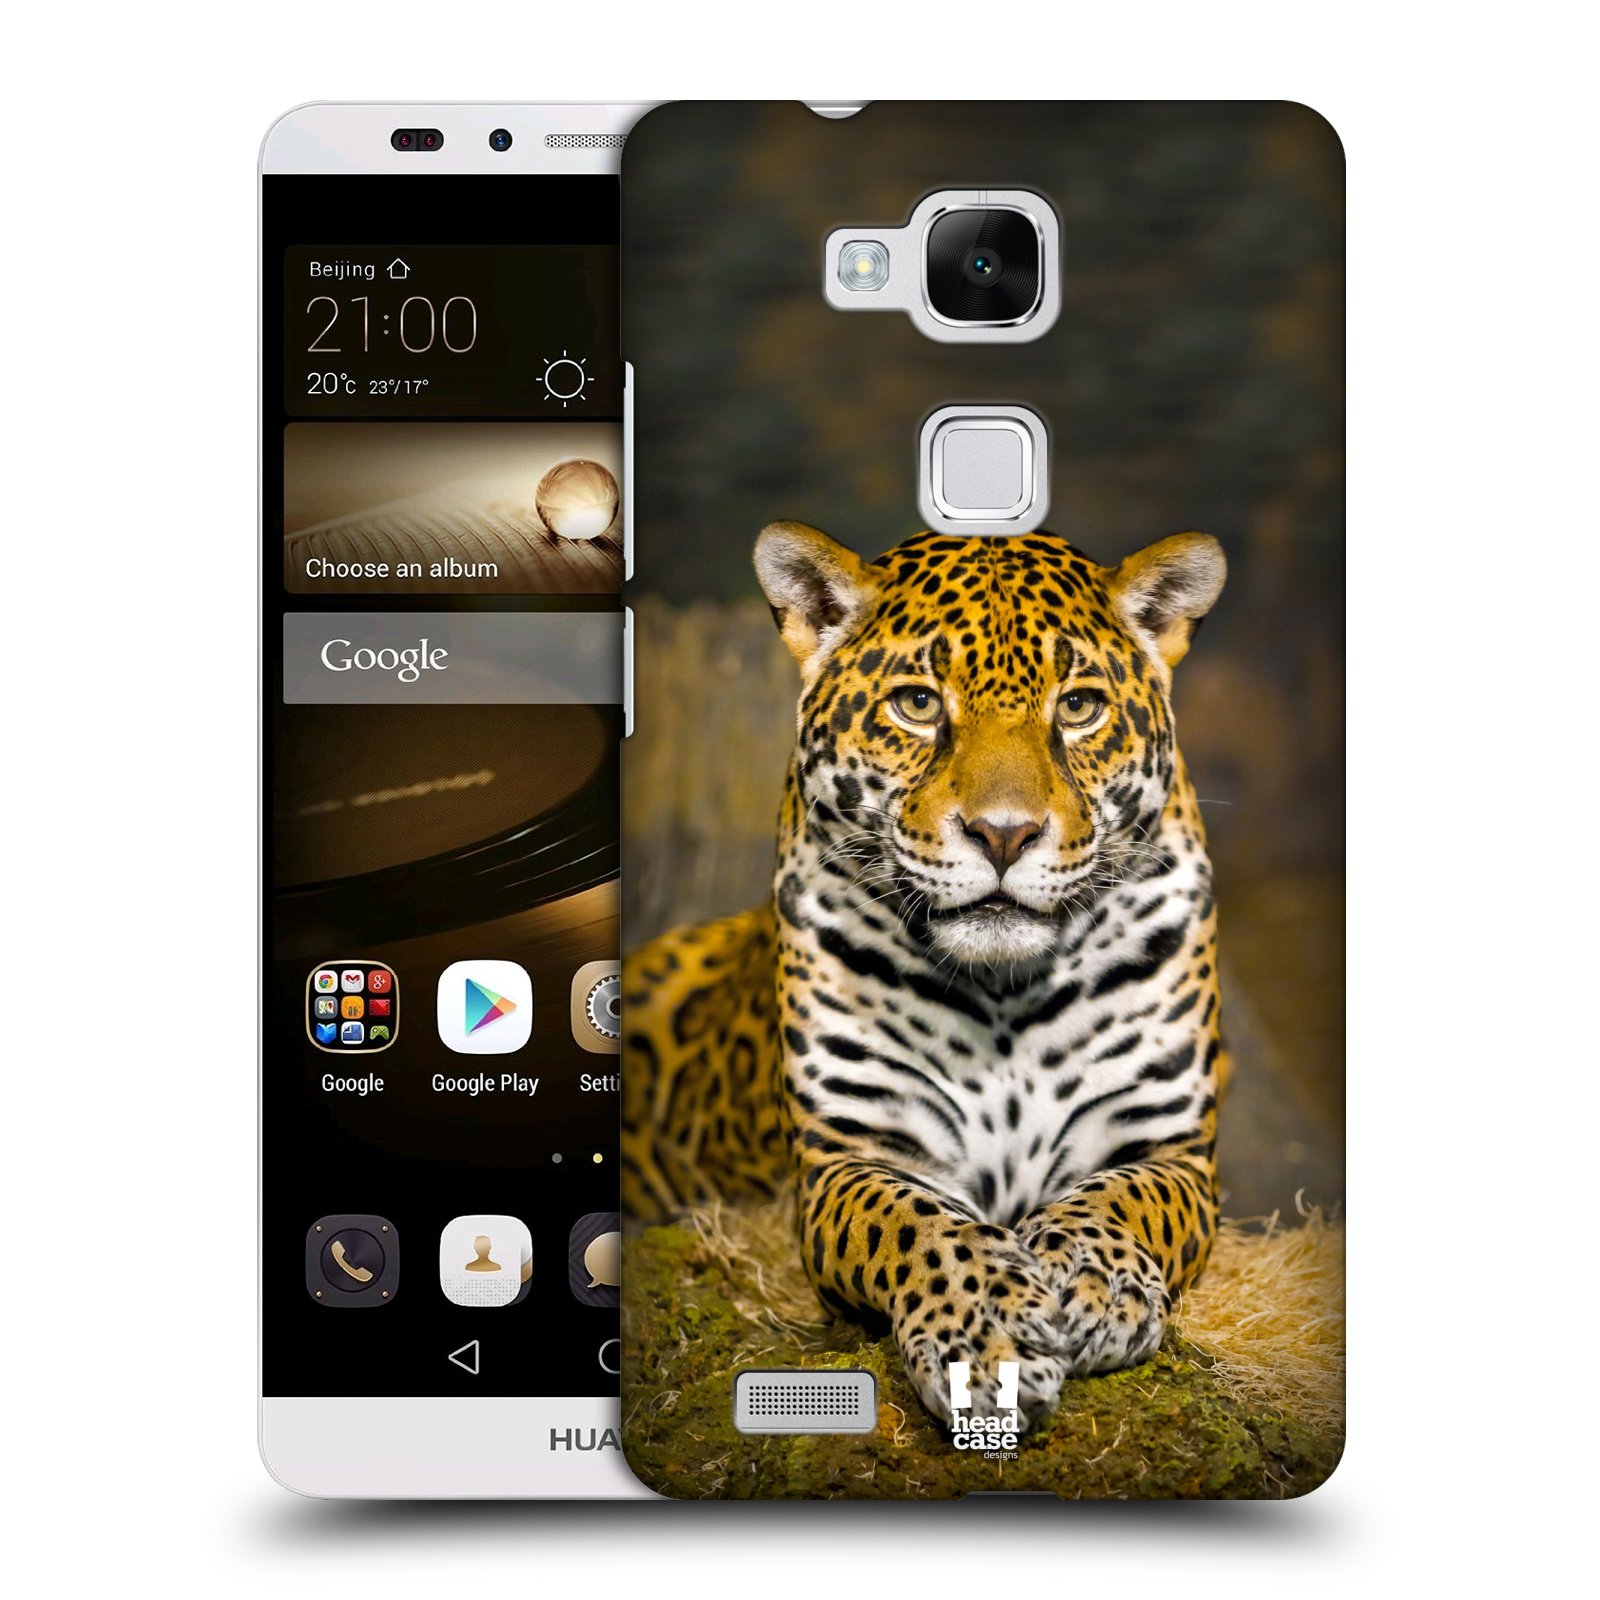 HEAD CASE plastový obal na mobil Huawei Mate 7 vzor slavná zvířata foto jaguár